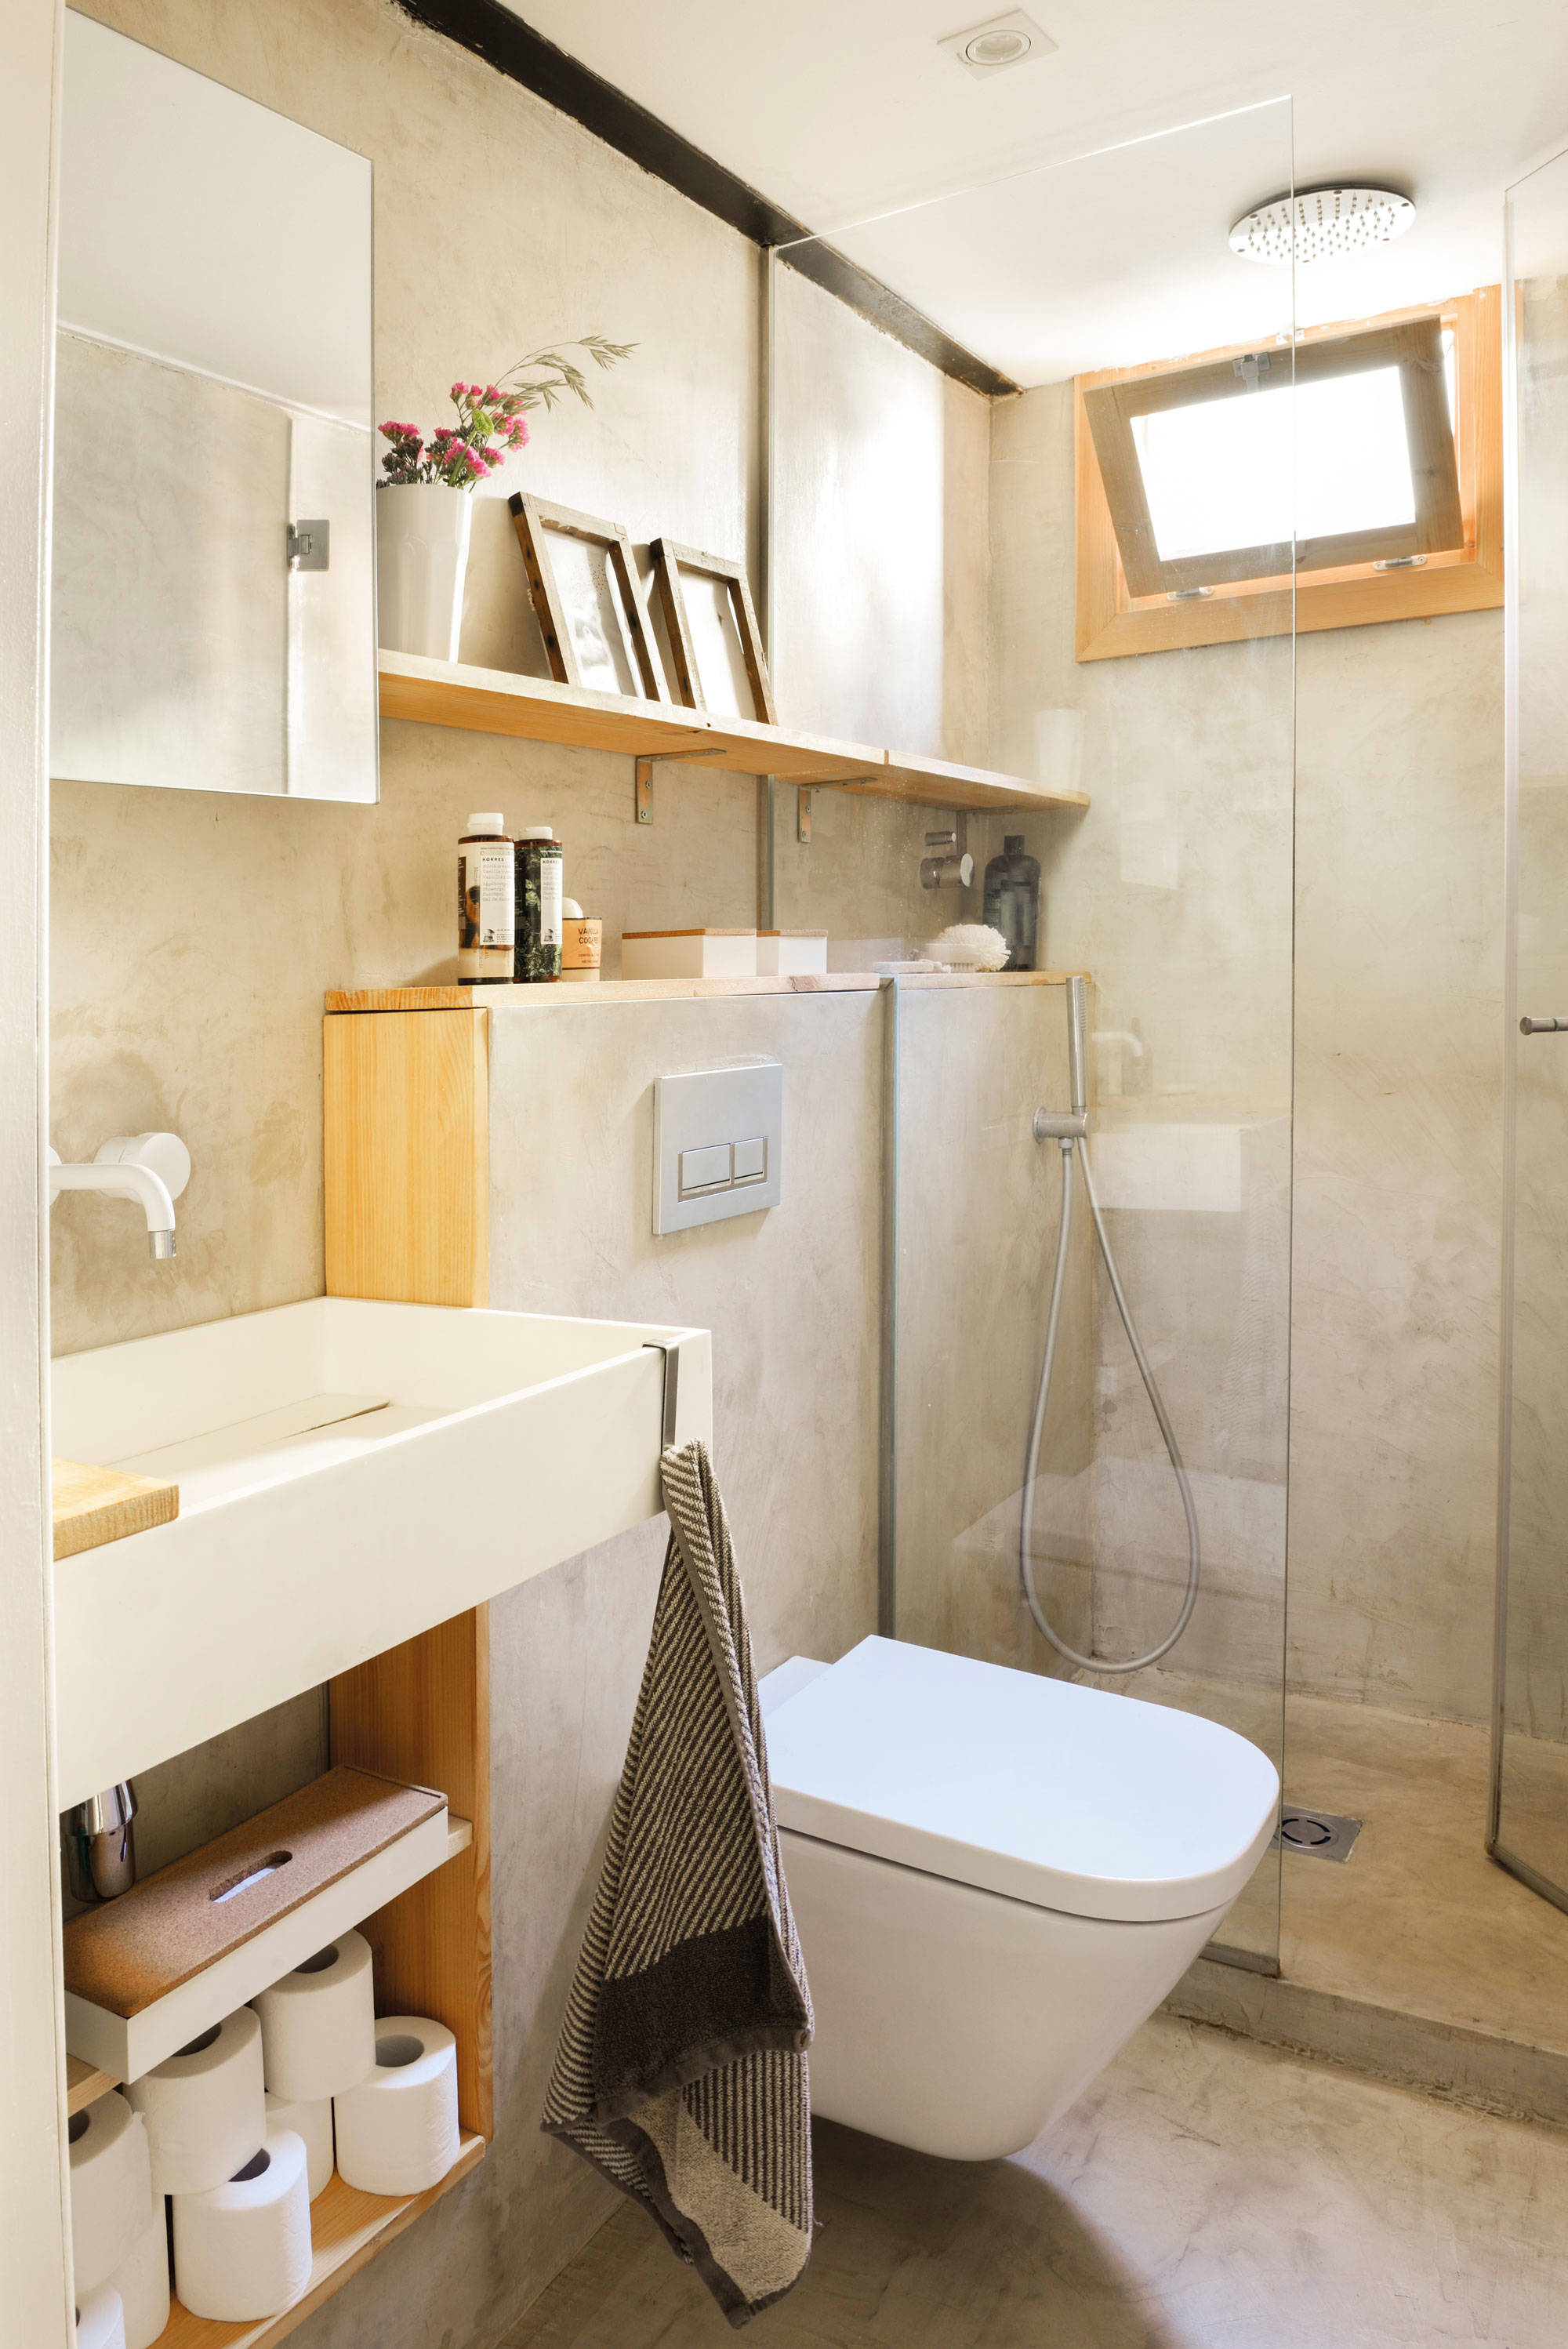 Baño con ducha y estantería de obra y estante de madera sobre el inodoro.